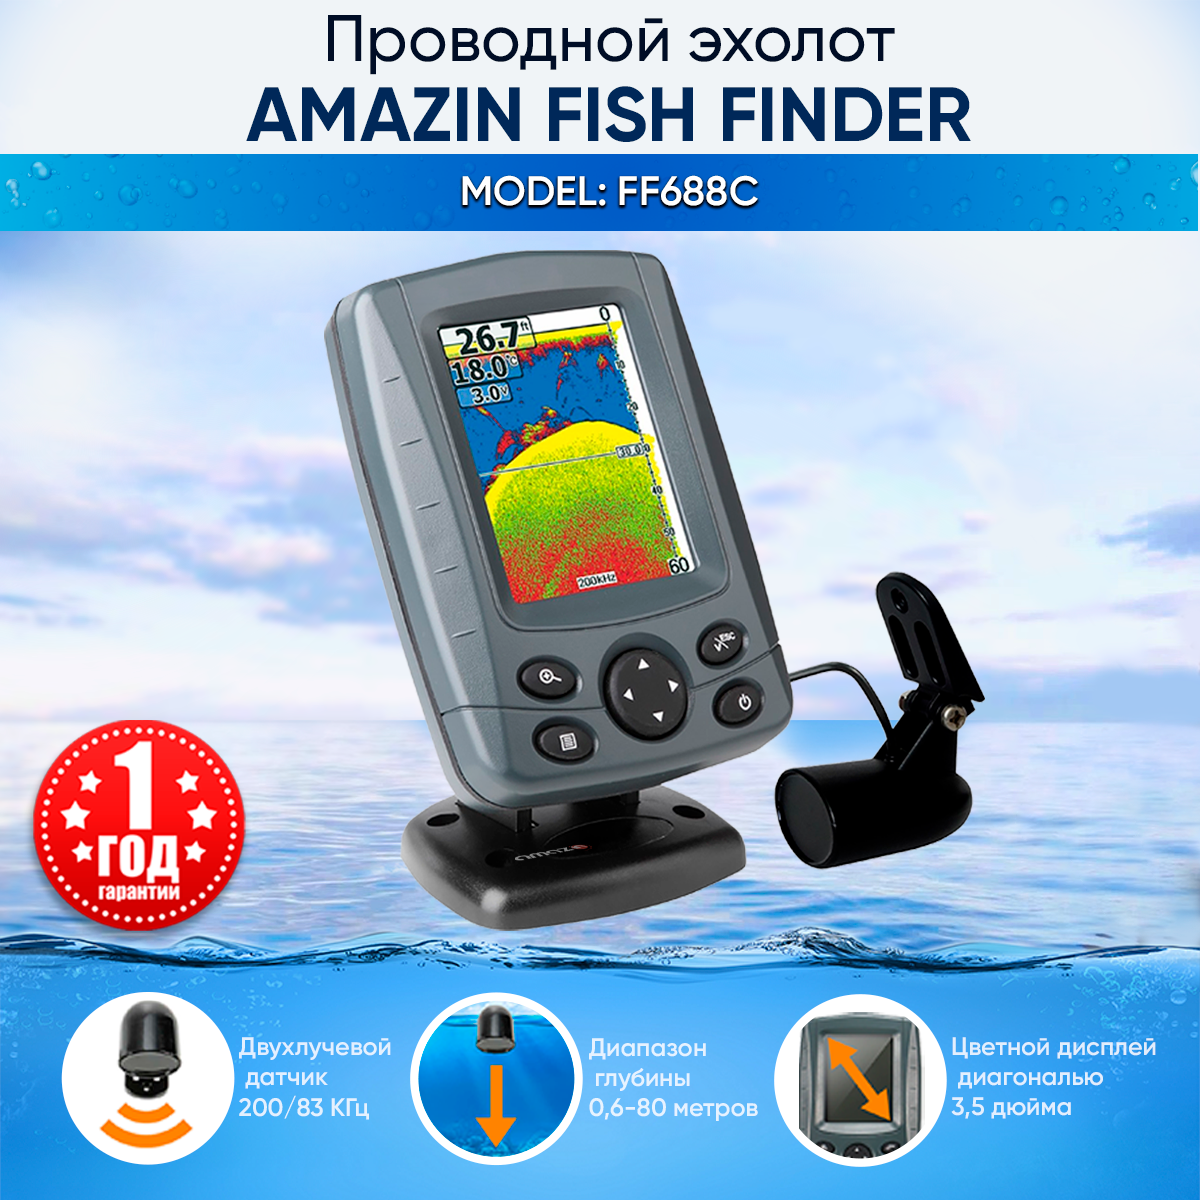 Эхолот для рыбалки с лодки Amazin FishFinder 688C 2-ух лучевой датчик и 3 режима сканирования